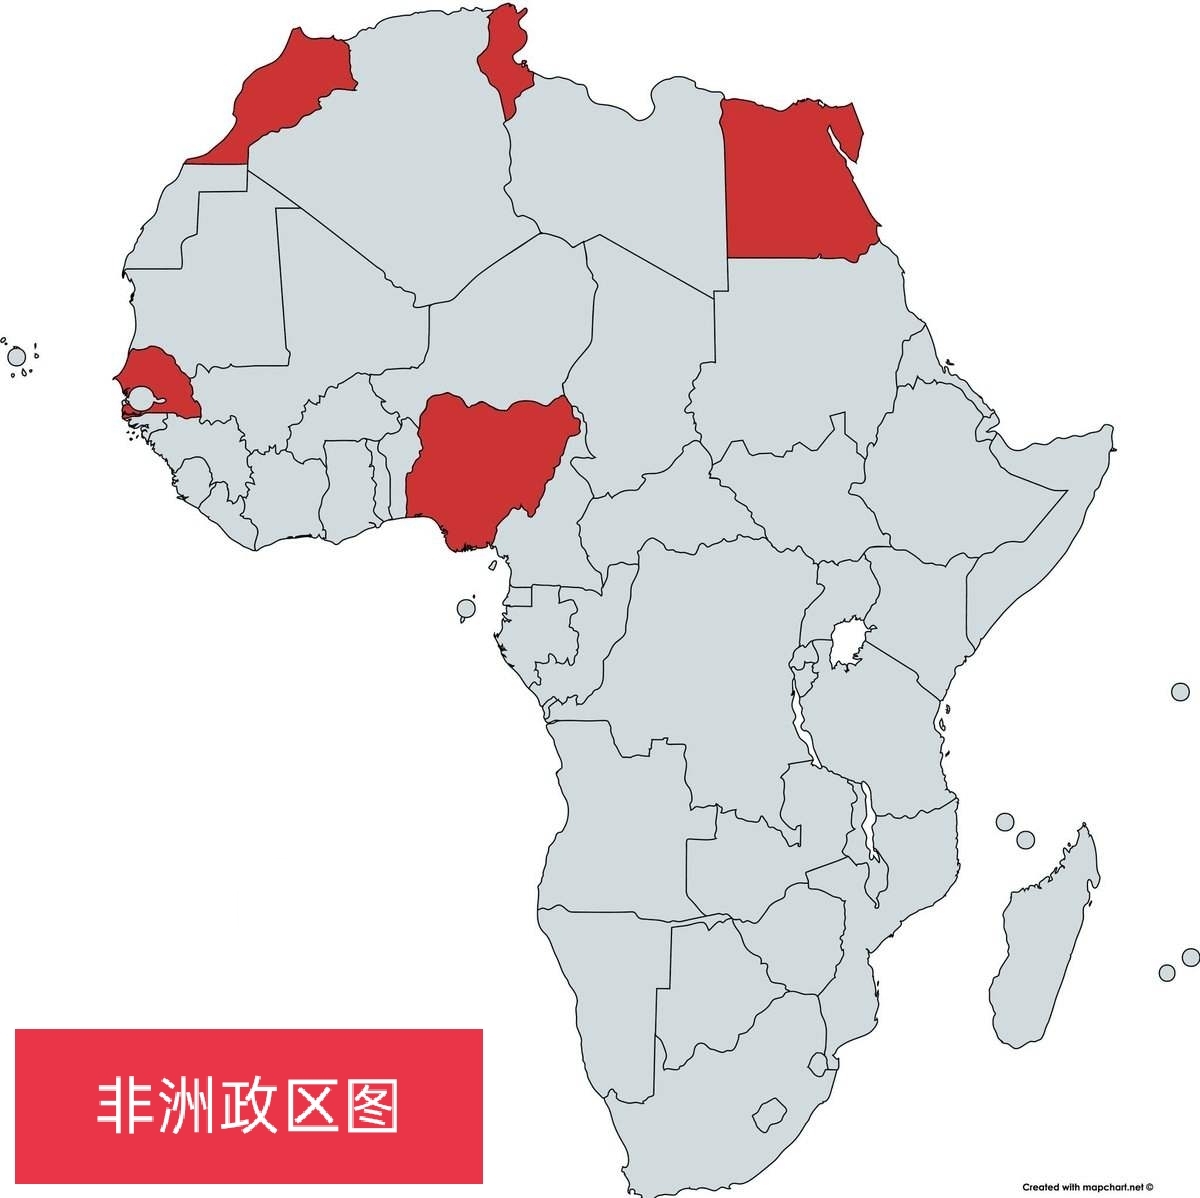 非洲共有54个国家,北非5个,东非12个,中非8个,西非16个,南非13个.